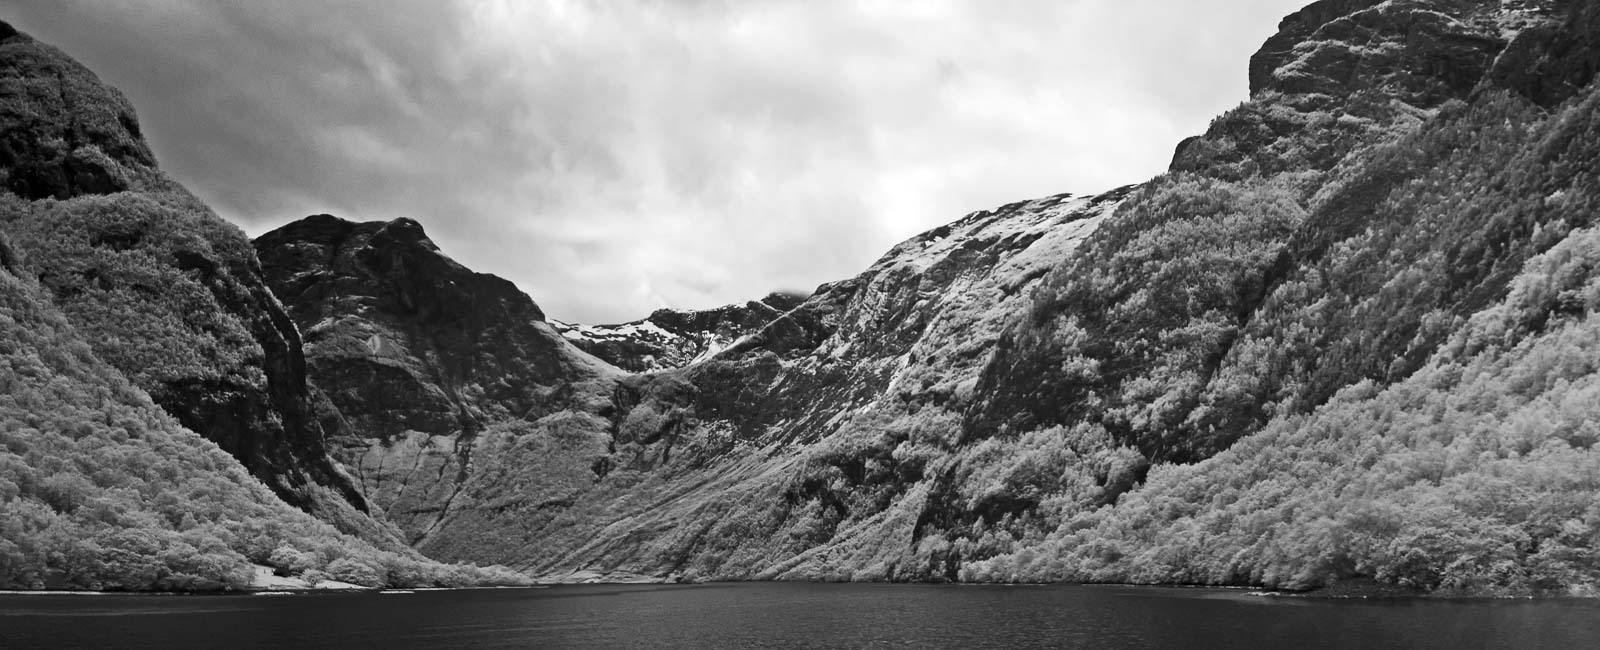 Норвегия, пейзаж, черно-белое, фьорд, инфракрасная фотография, панорама, ir, море, Сергей Козинцев